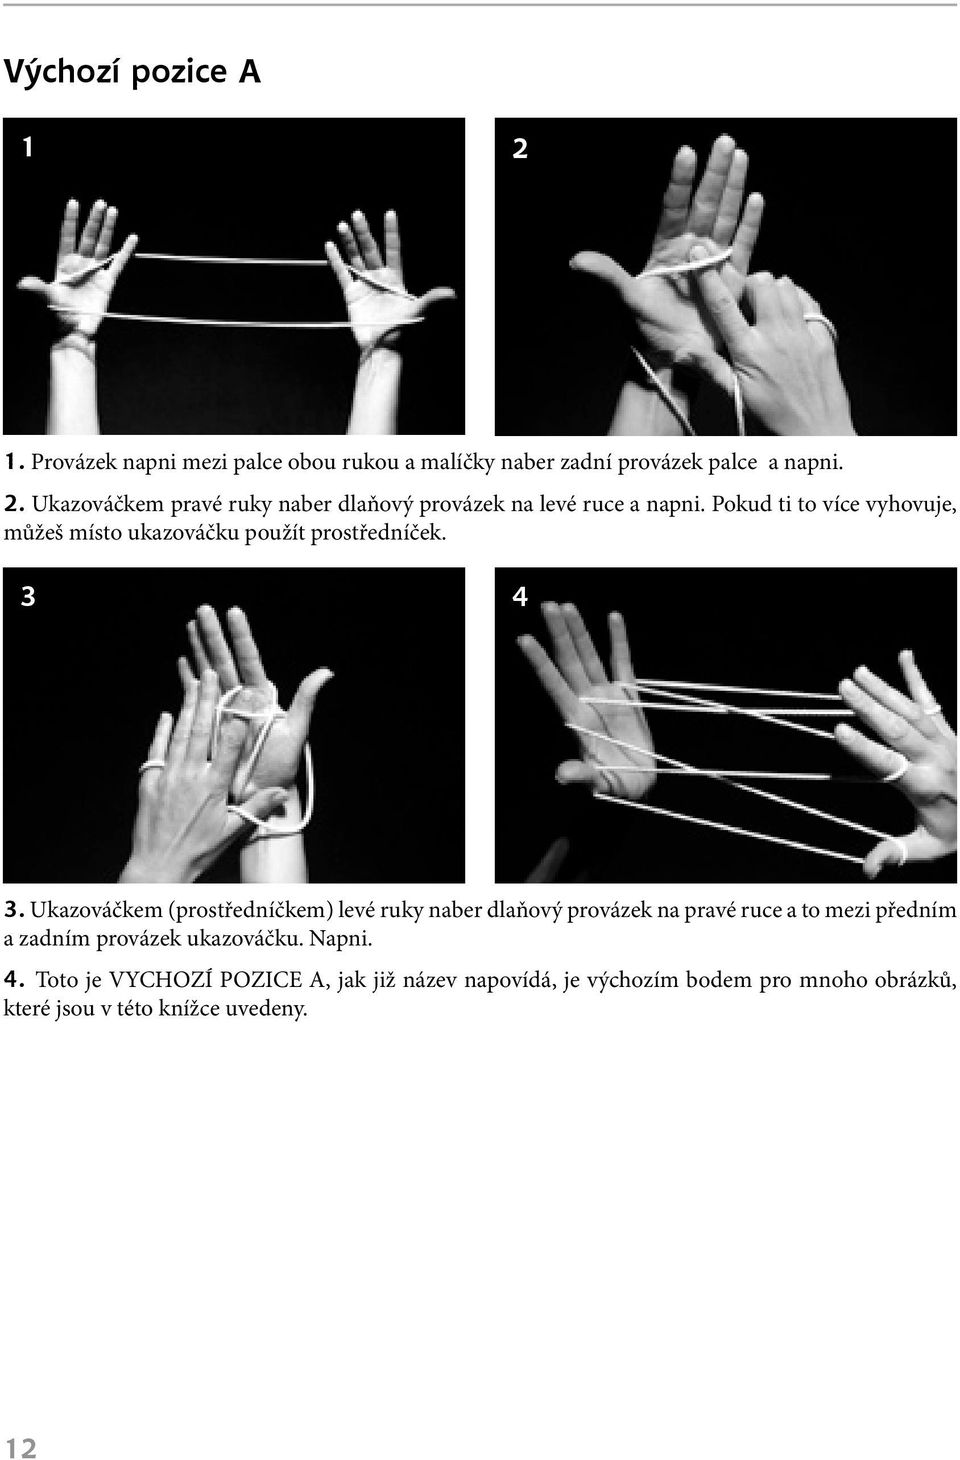 Ukazováčkem (prostředníčkem) levé ruky naber dlaňový provázek na pravé ruce a to mezi předním a zadním provázek ukazováčku.